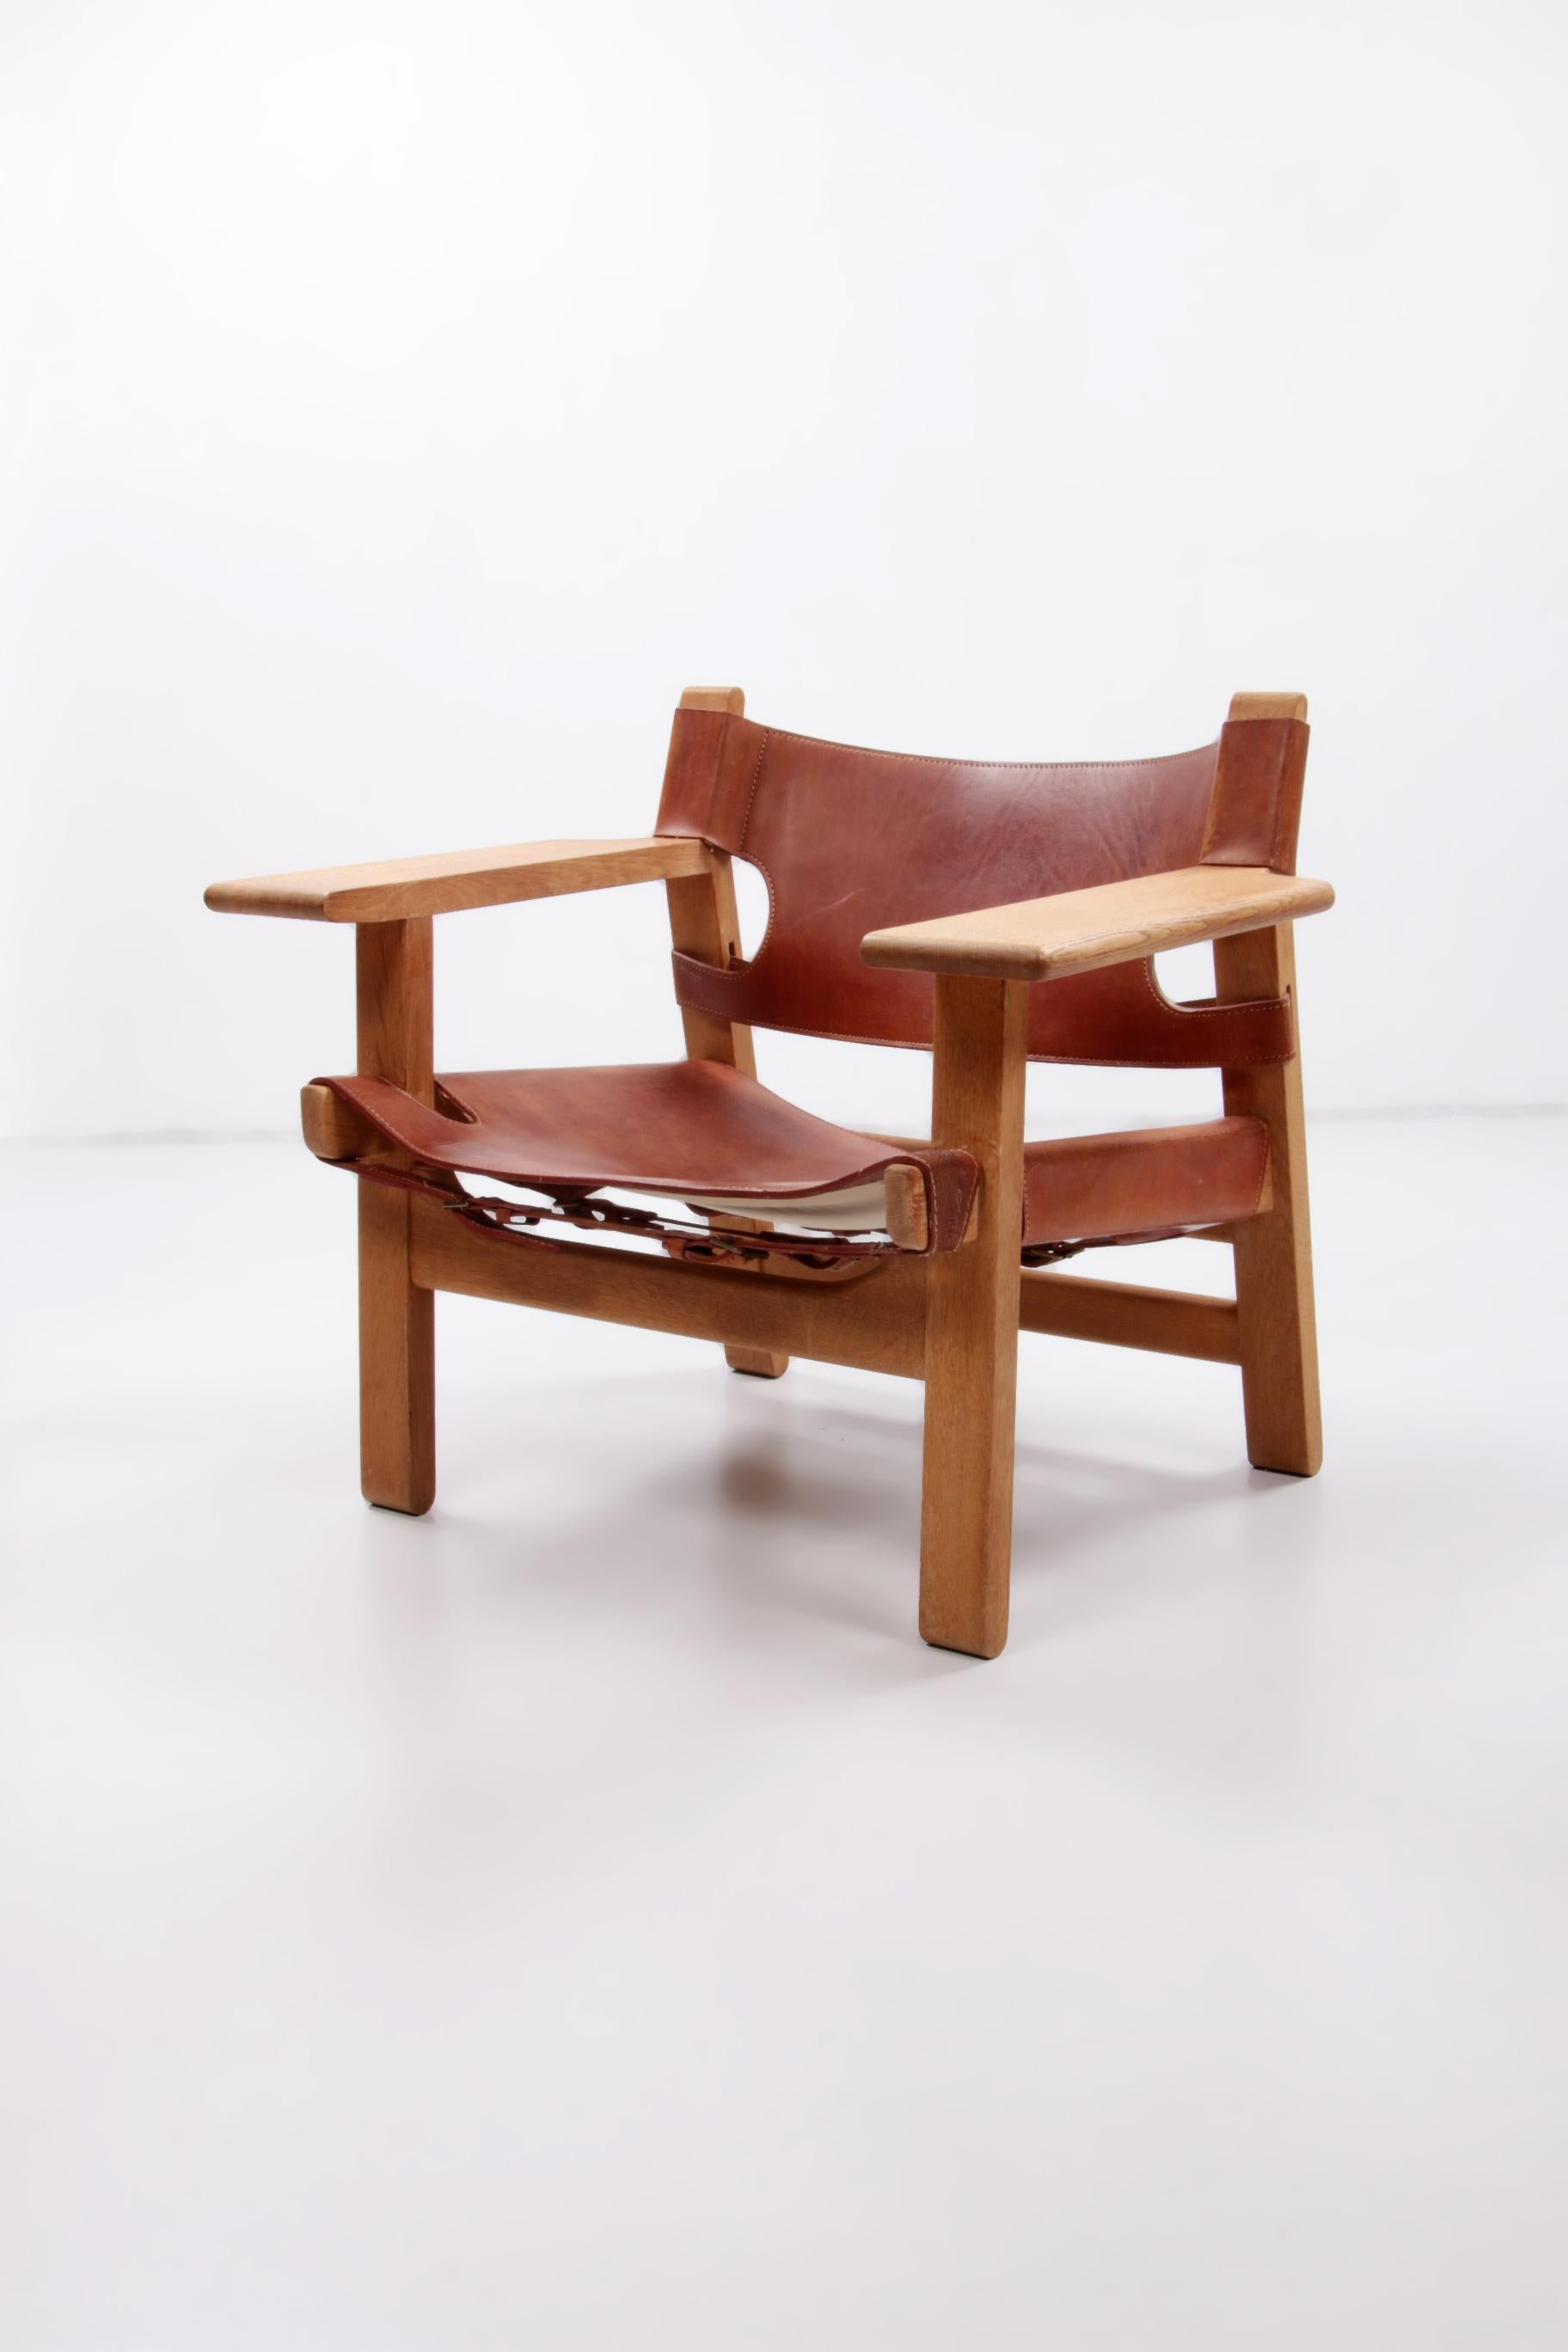 Chaise design de Borge Mogensen, également appelée chaise Spanisch, 1960 Danemark.
Cette chaise safari originale a été fabriquée dans les années 1960 et le cuir de la selle a donc une belle patine. C'est un modèle très robuste avec un cadre en